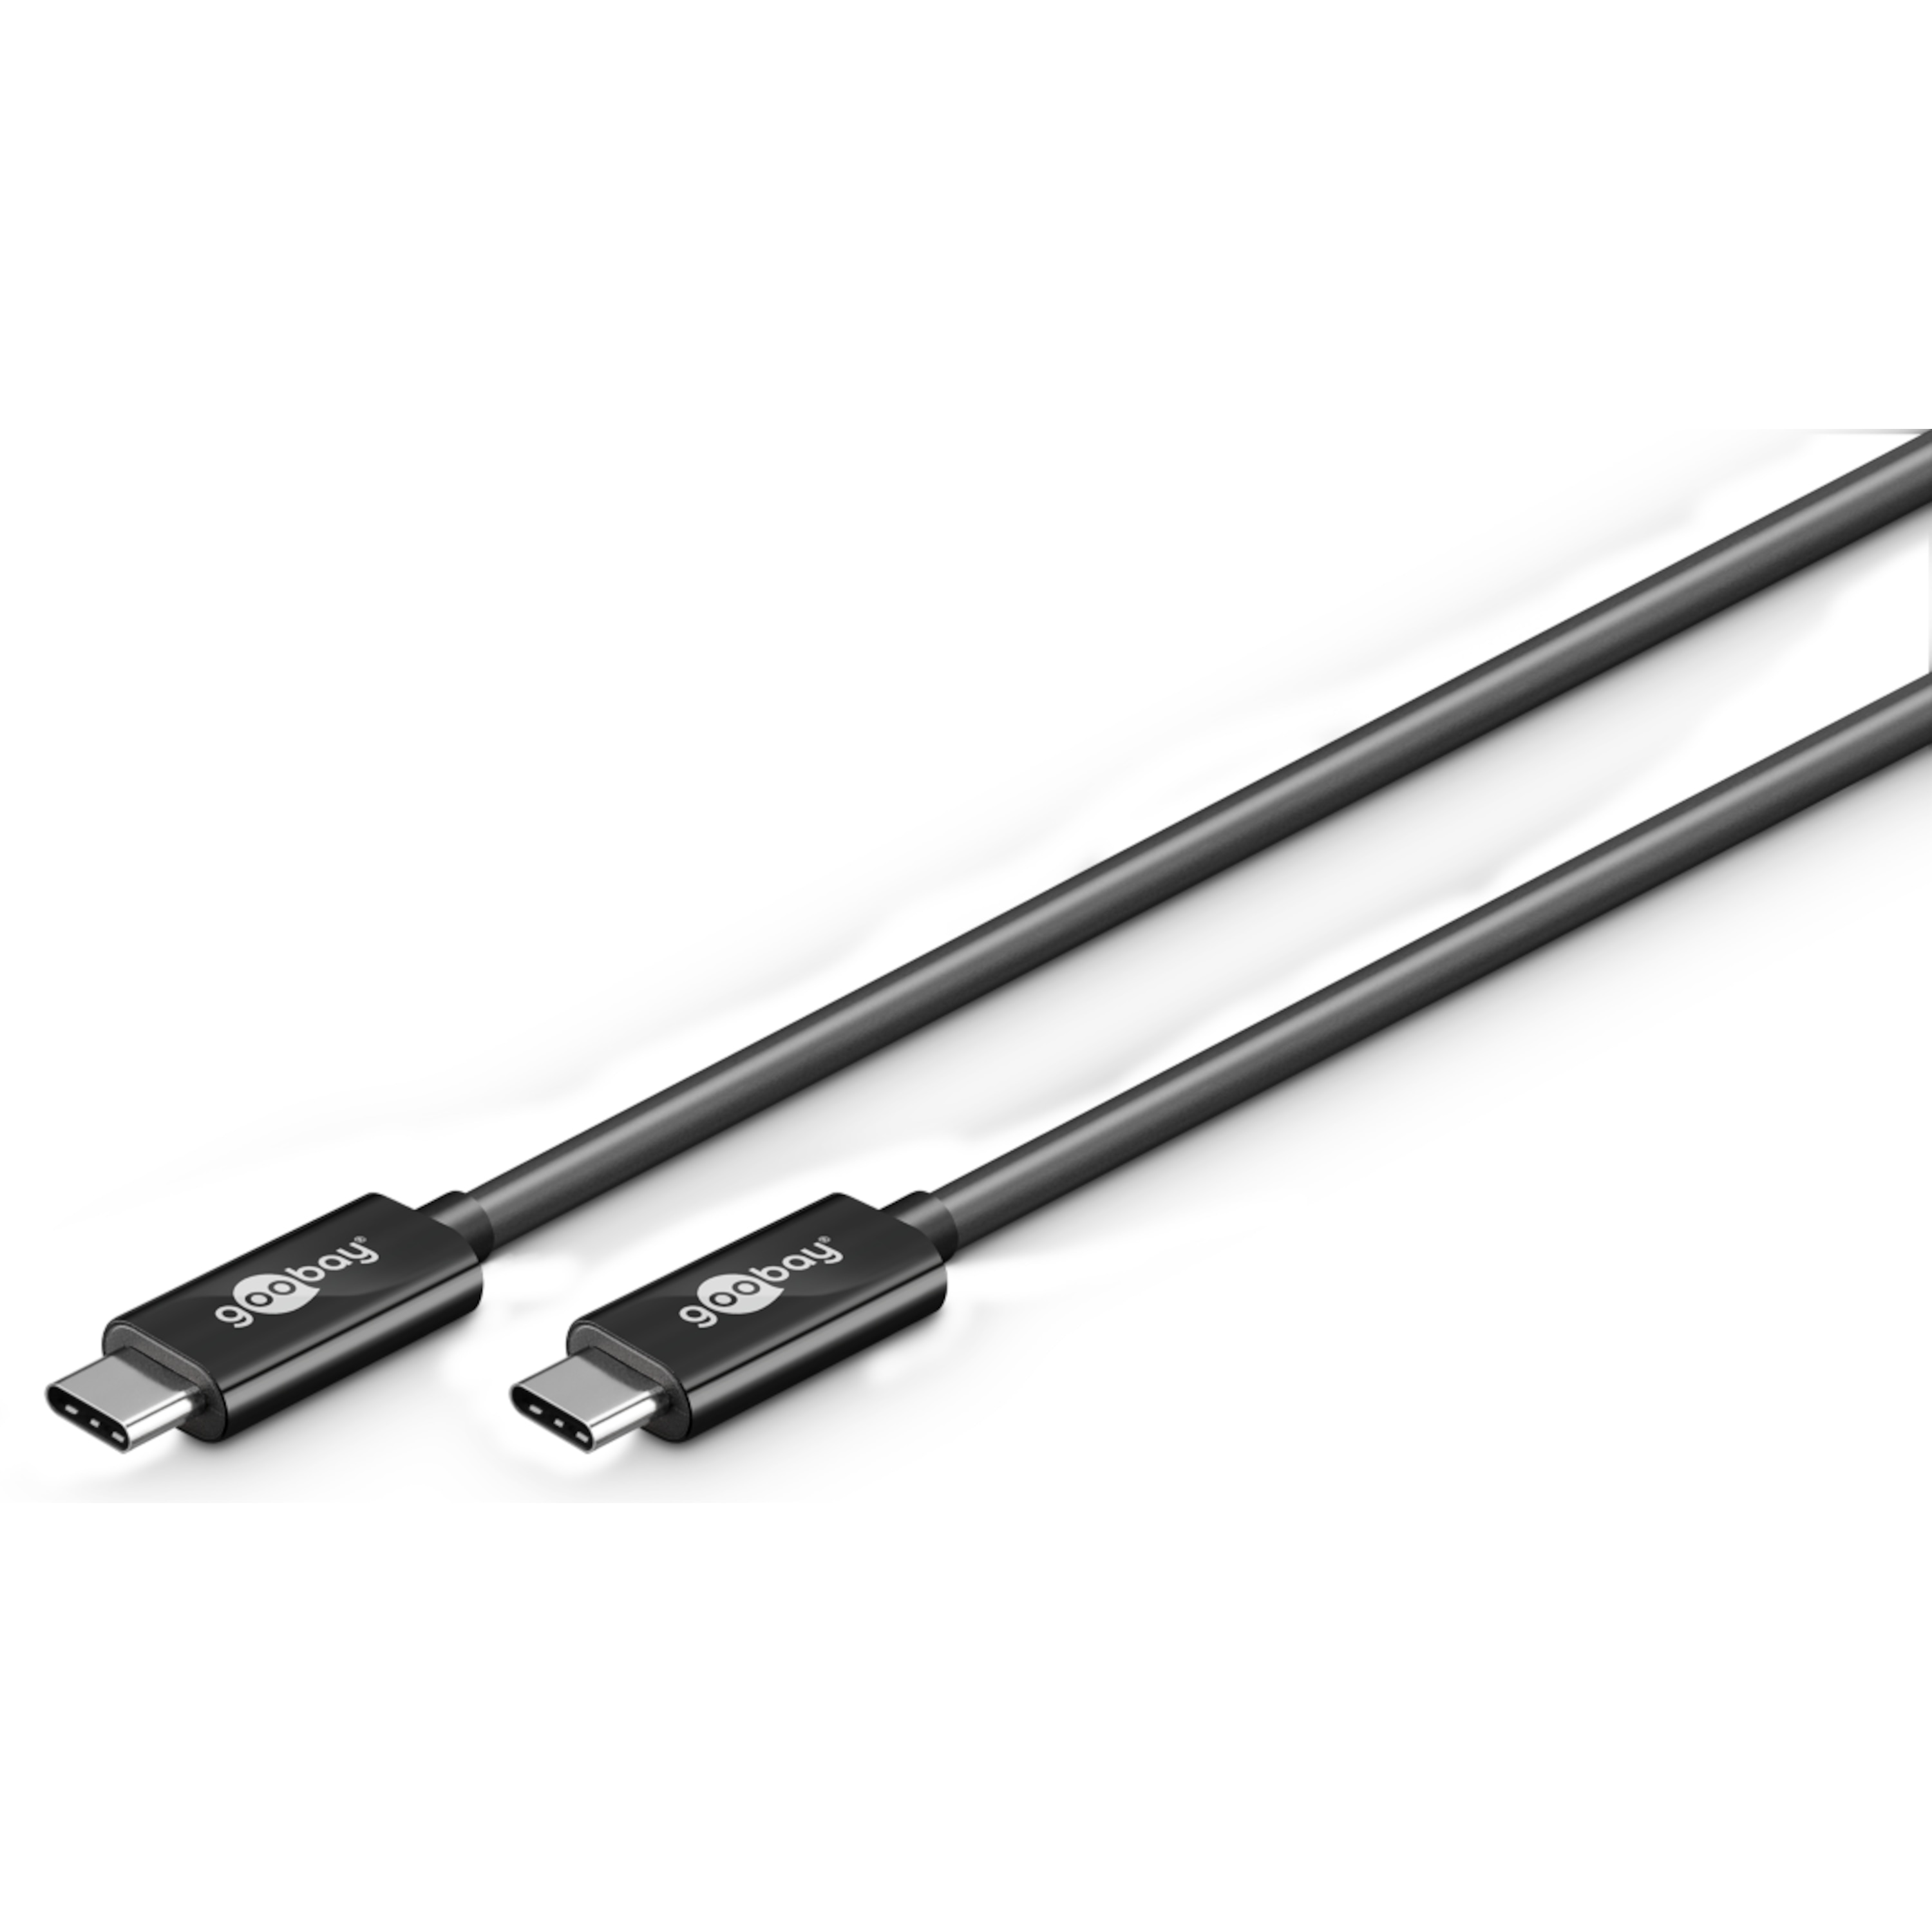 WENTRONIC USB 3.1 Generation 2 Kabel 1 m, SuperSpeed+ Datenübertragung, 20-mal schneller als USB 2.0